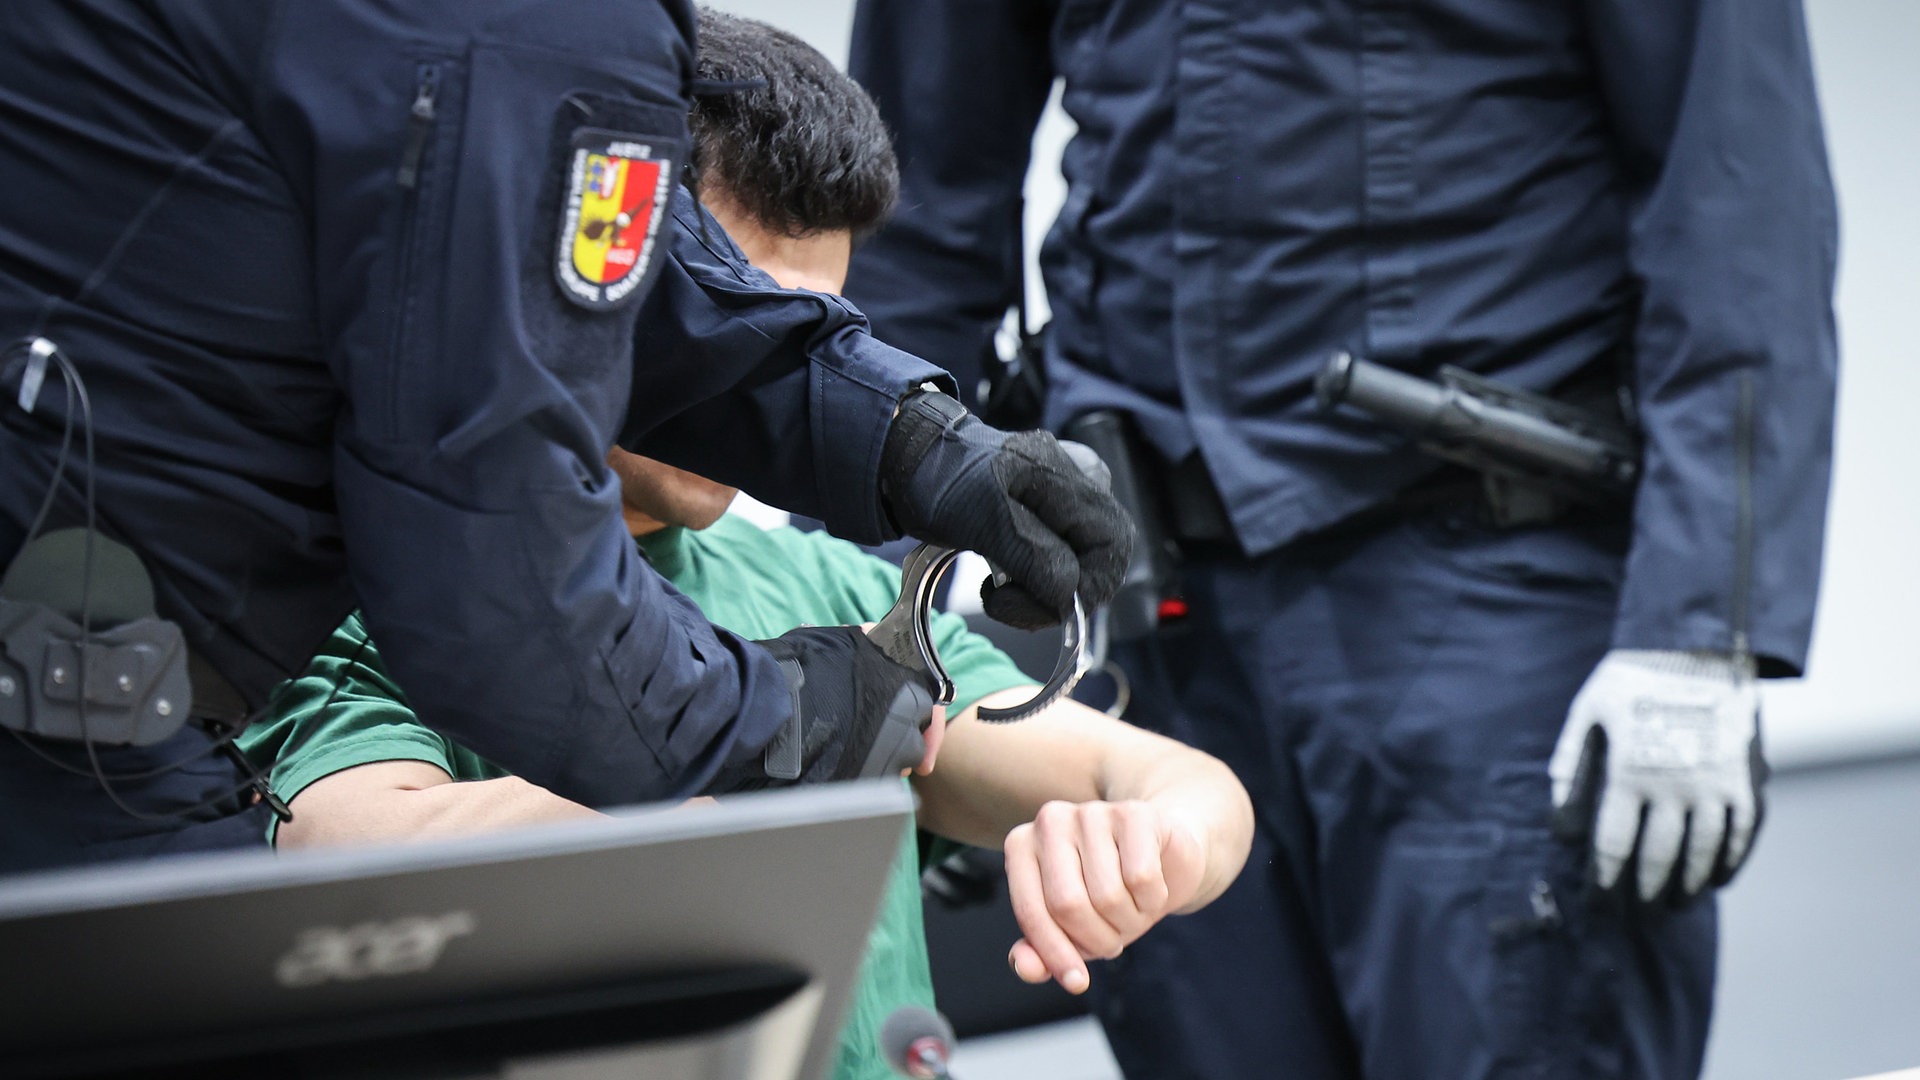 Urteil im Brokstedt-Prozess: Lebenslange Haft für tödliche Messerattacke